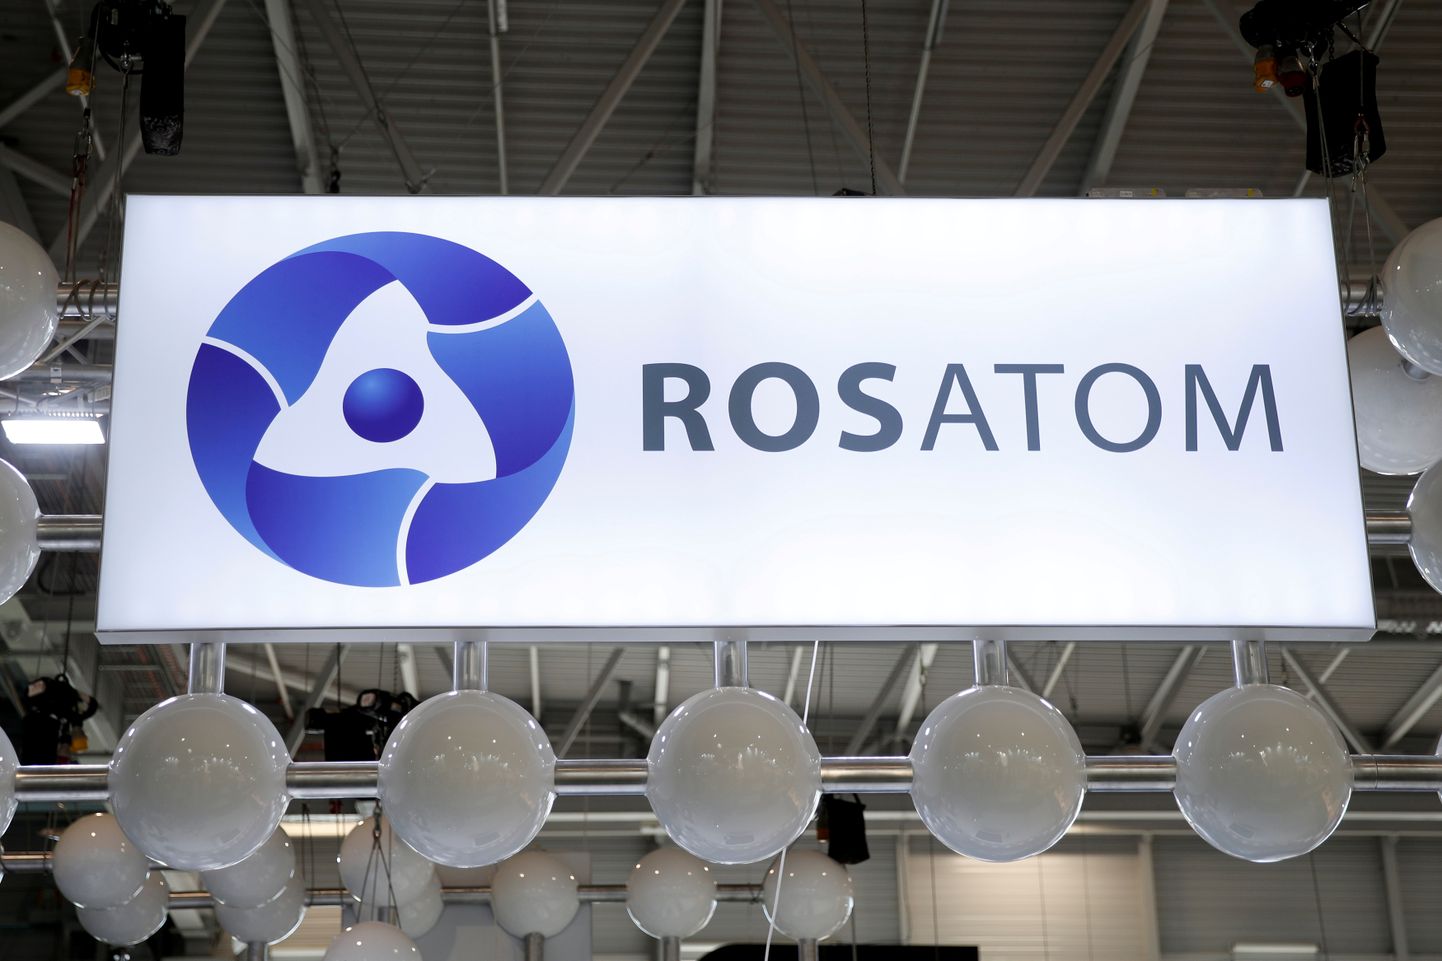 Venemaa riikliku tuumakorporatsiooni Rosatom logo.